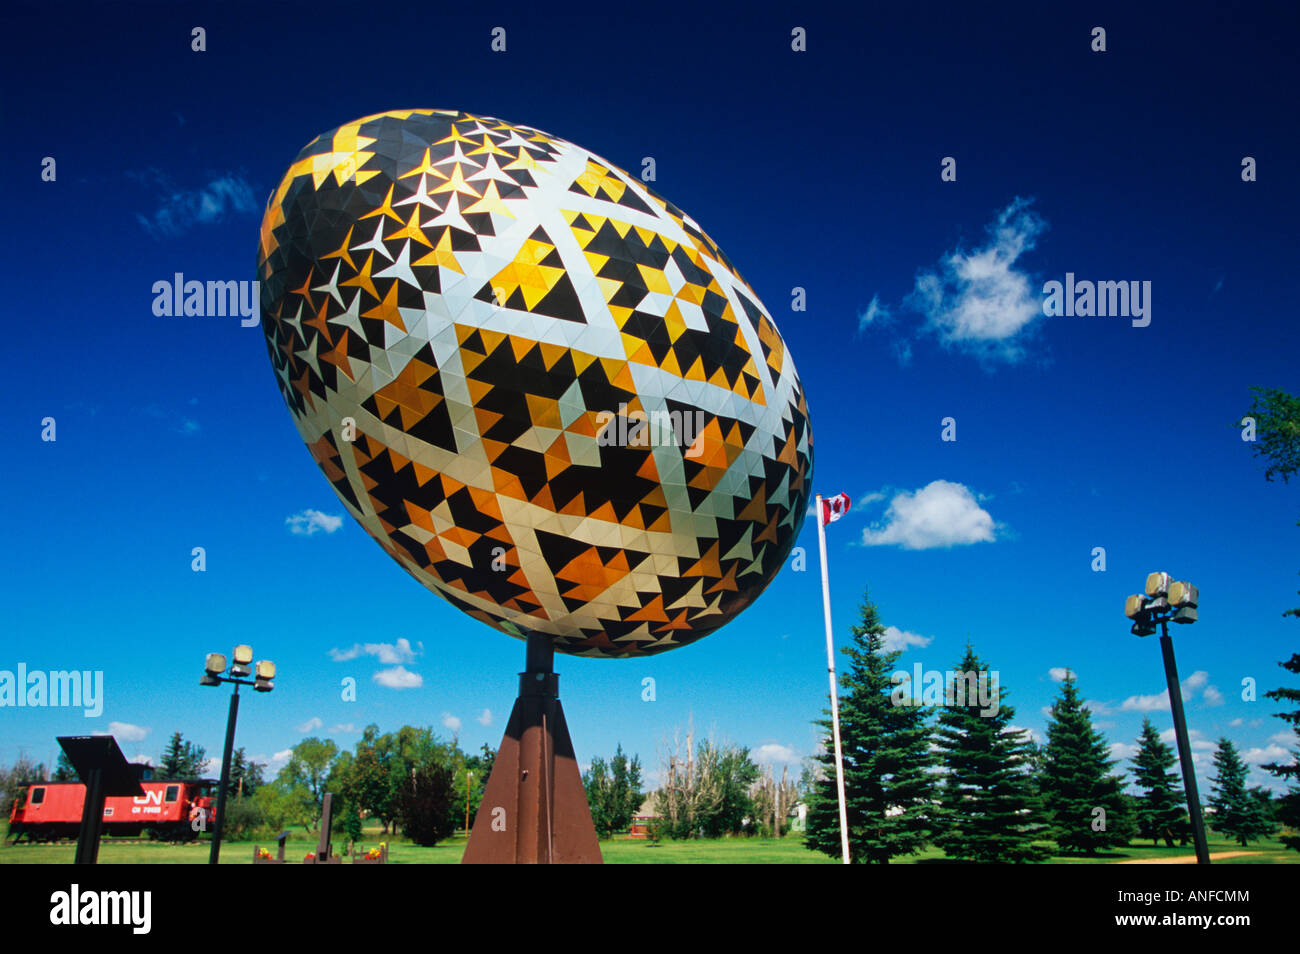 Weltweit größte Osterei, das Pysanka. Elch Park, Vegreville, Alberta, Kanada Stockfoto